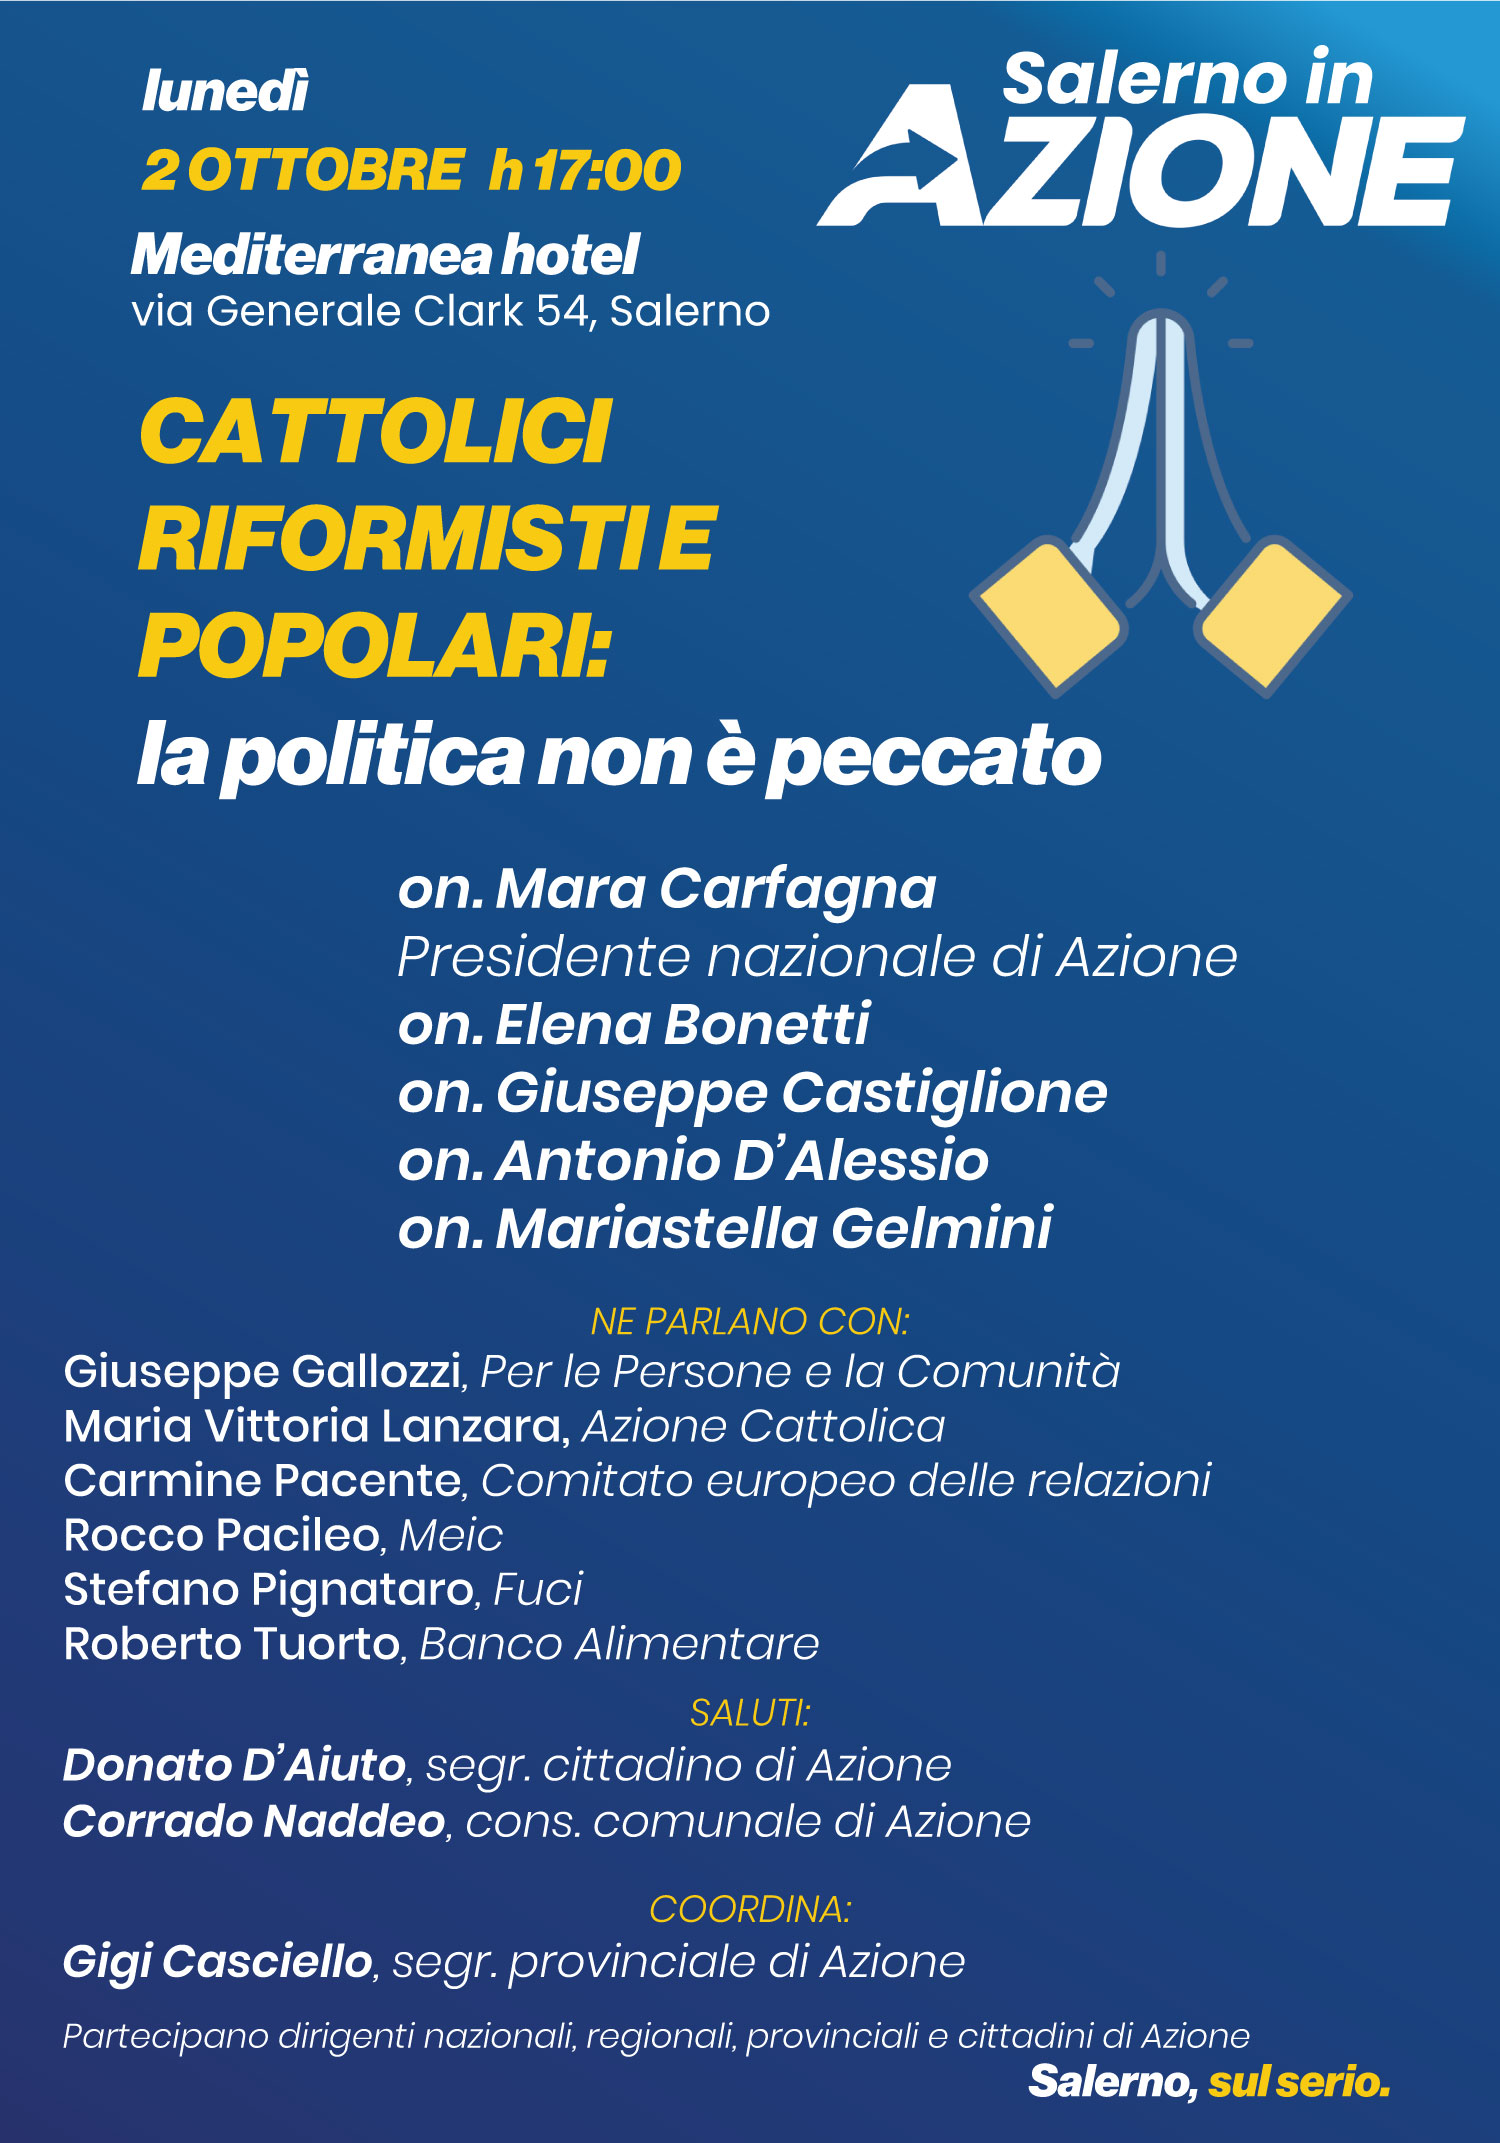 Salerno: Azione “Cattolici riformisti e popolari”, convention “La politica non è peccato”